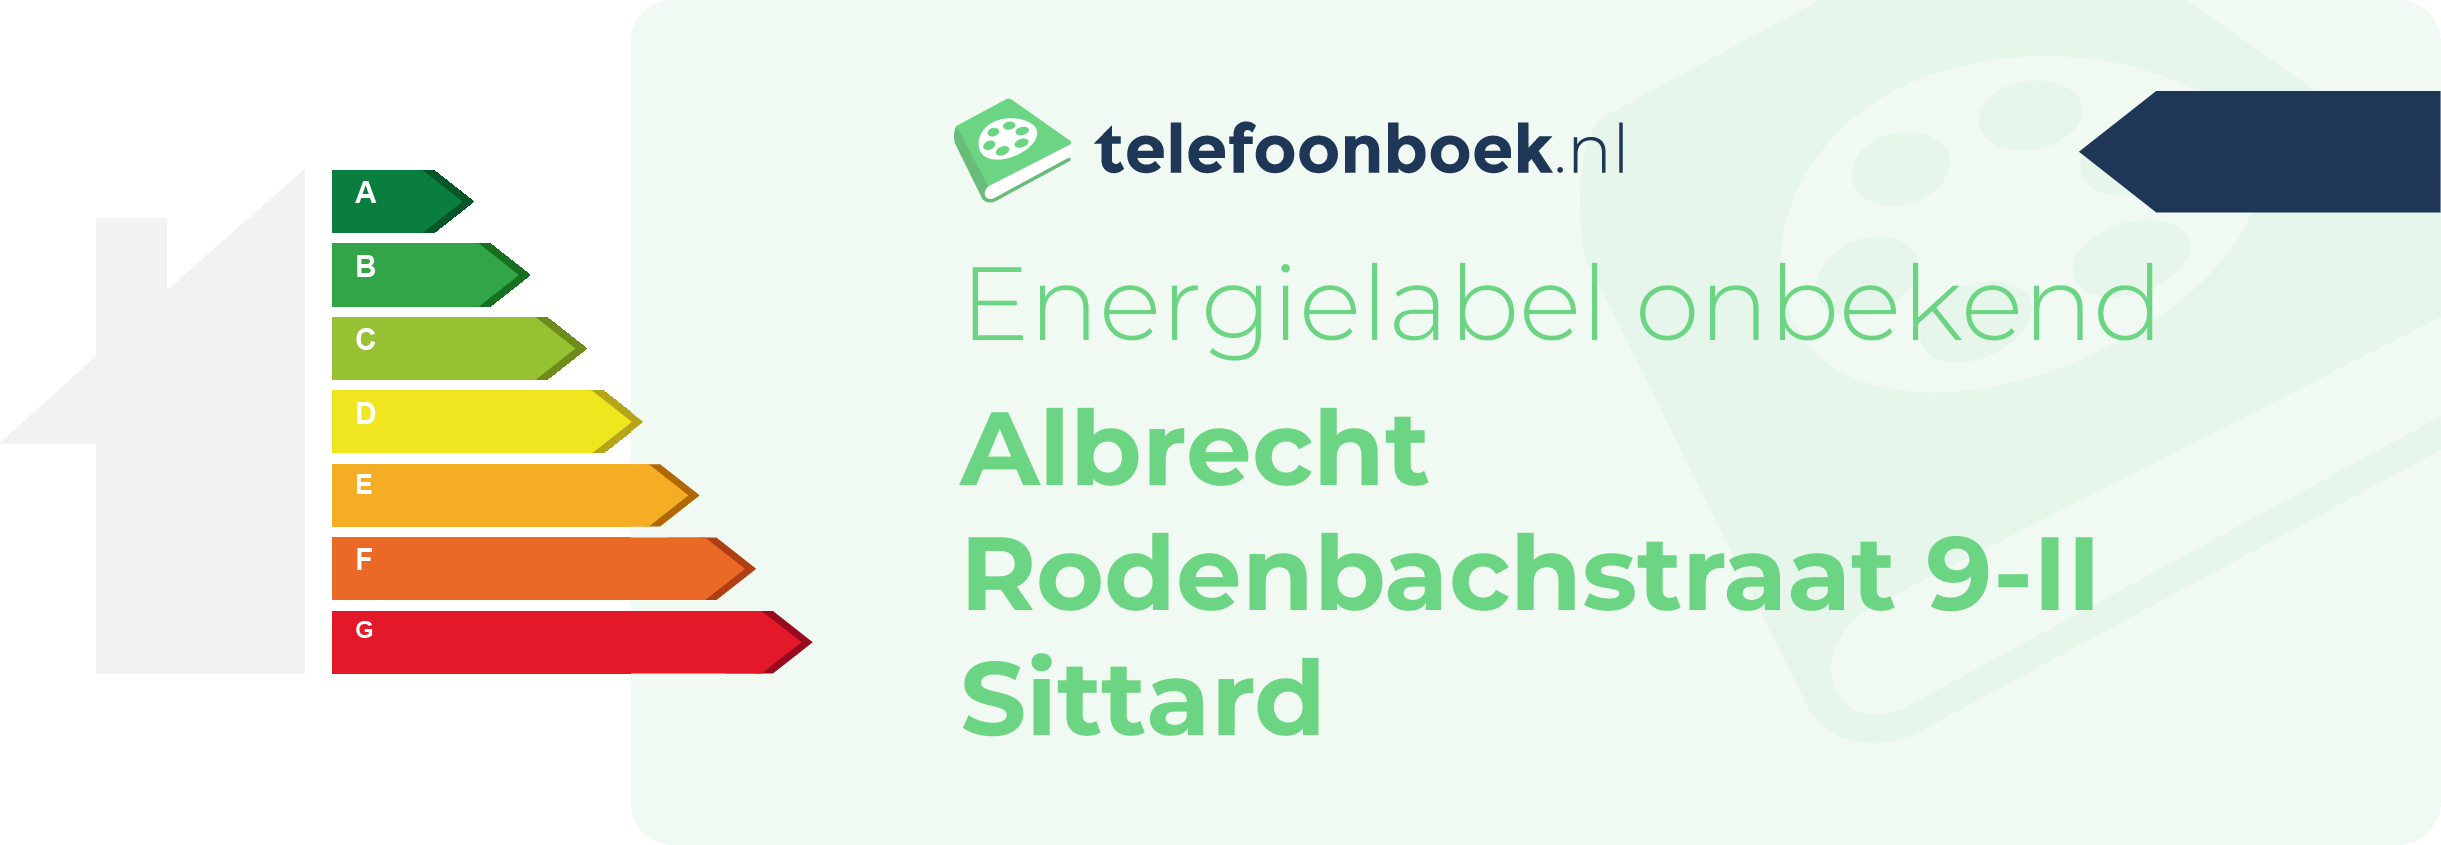 Energielabel Albrecht Rodenbachstraat 9-II Sittard